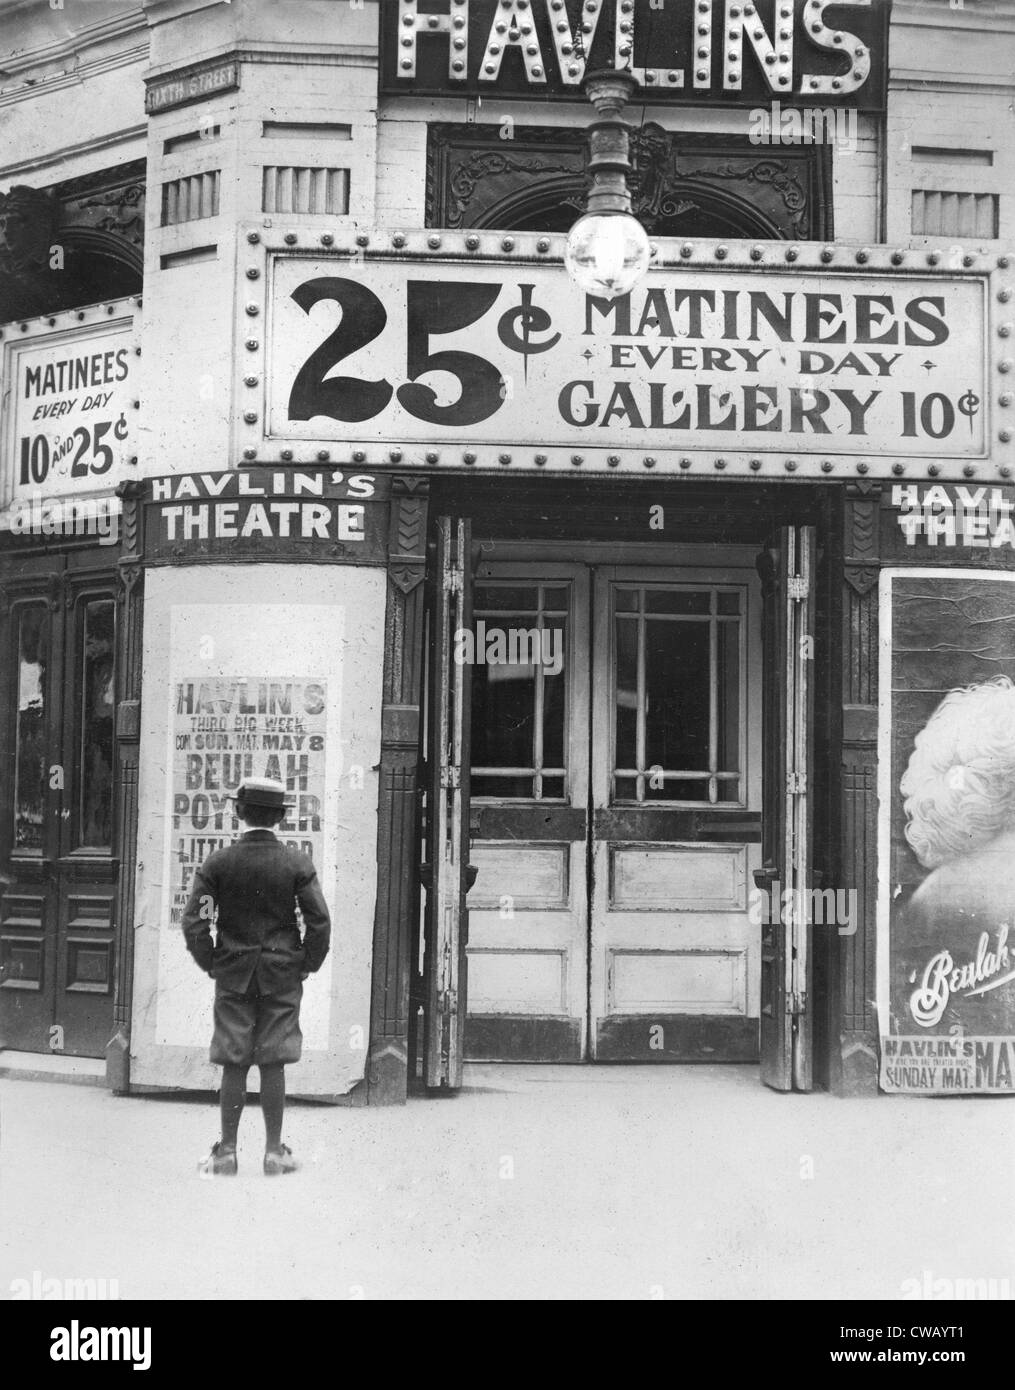 Ragazzo davanti a un cinema che mostra una pellicola con Beulah Poynter, didascalia originale citazione: "dove i ragazzi trascorrono il loro denaro", Foto Stock